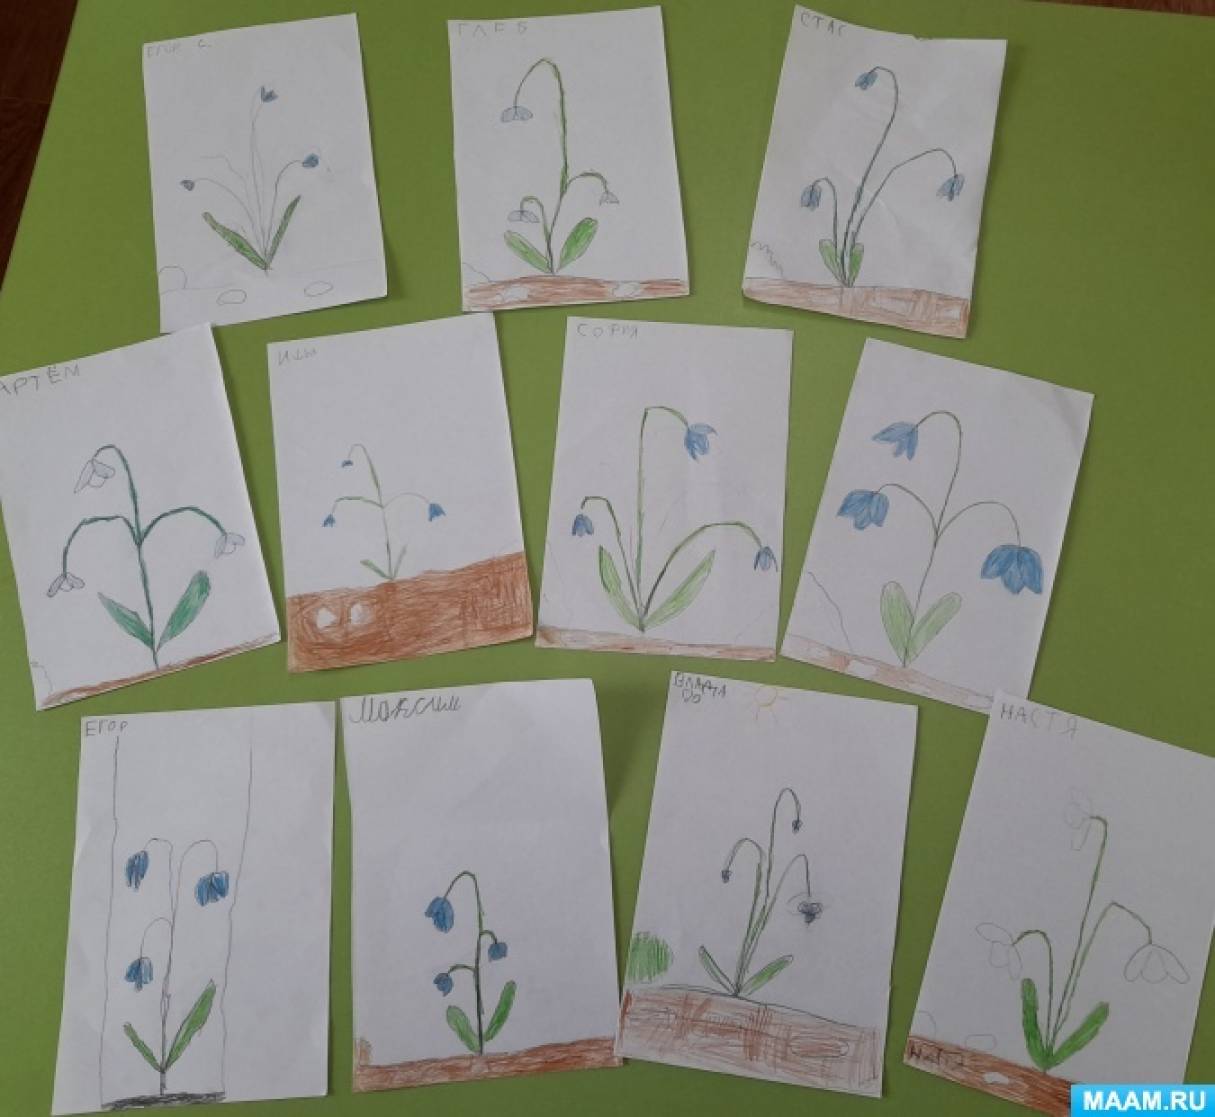 Рисование первоцветы средняя группа. «Первоцветы» рисование в сташей группе. Рисование первоцветы в младшей группе. Рисование первоцветы старшая группа. Первоцветы рисование в старшей группе детского сада.